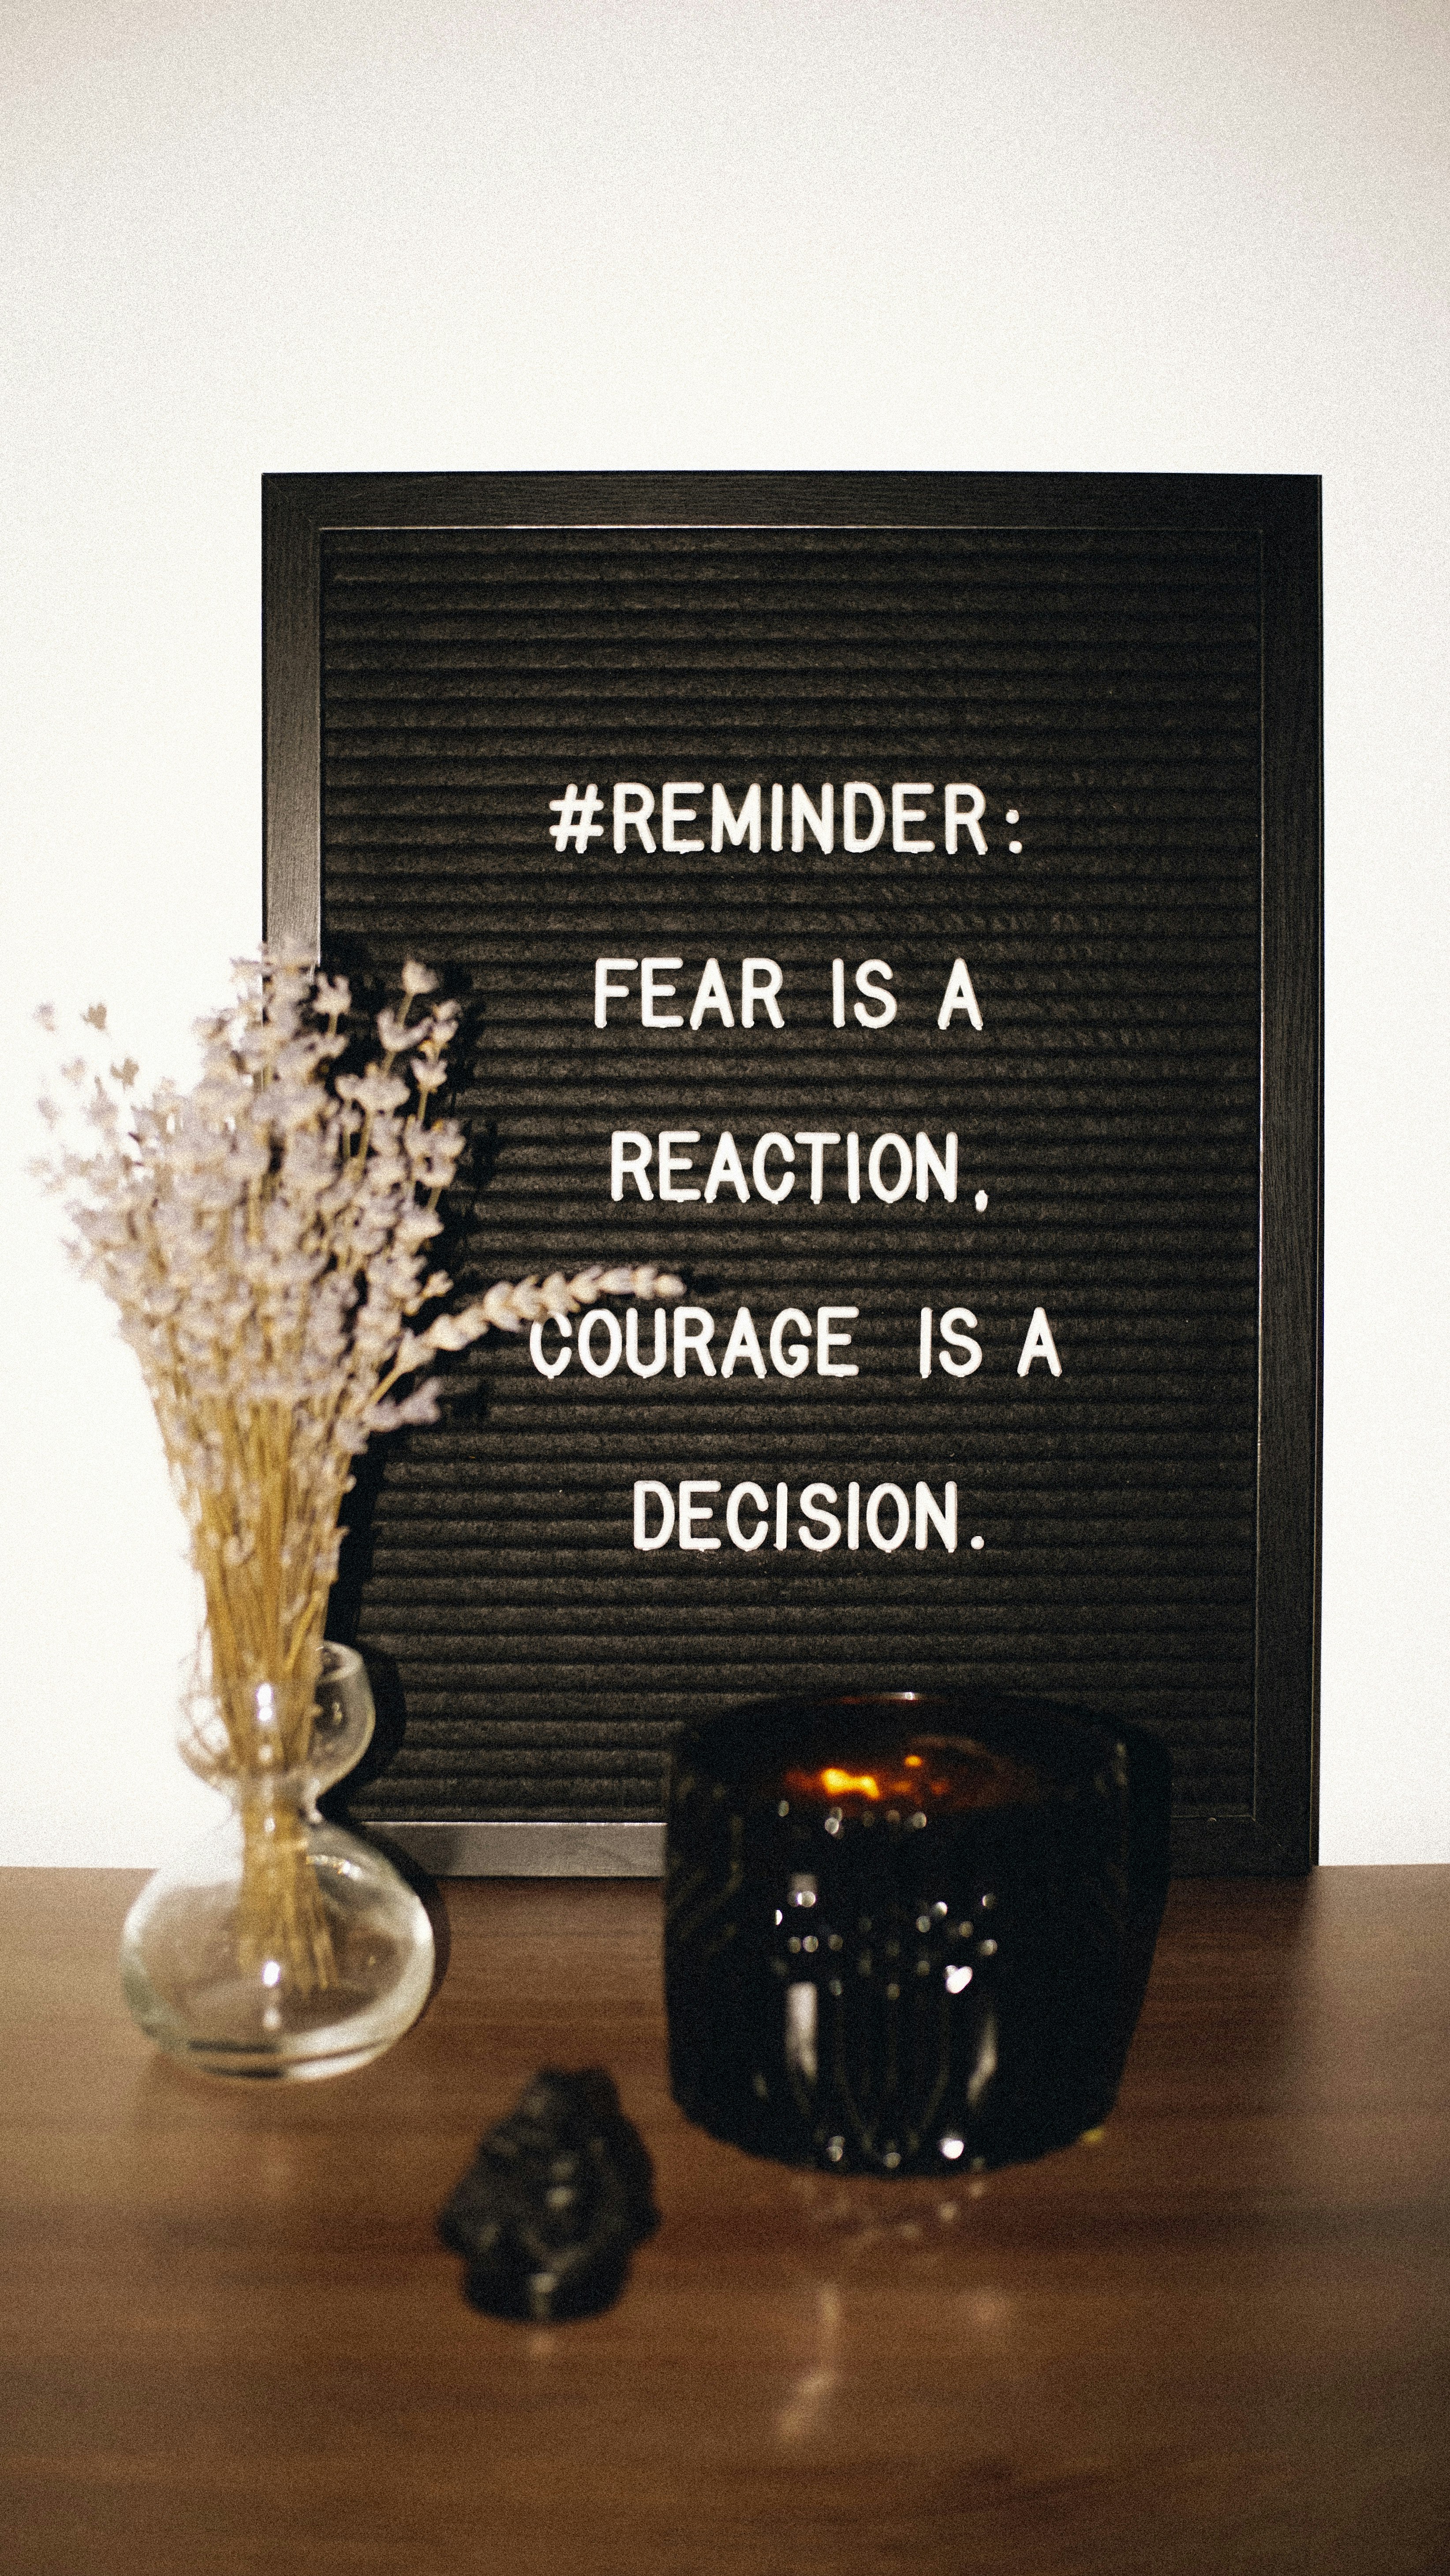 恐懼是一個反應，勇氣是一個決定